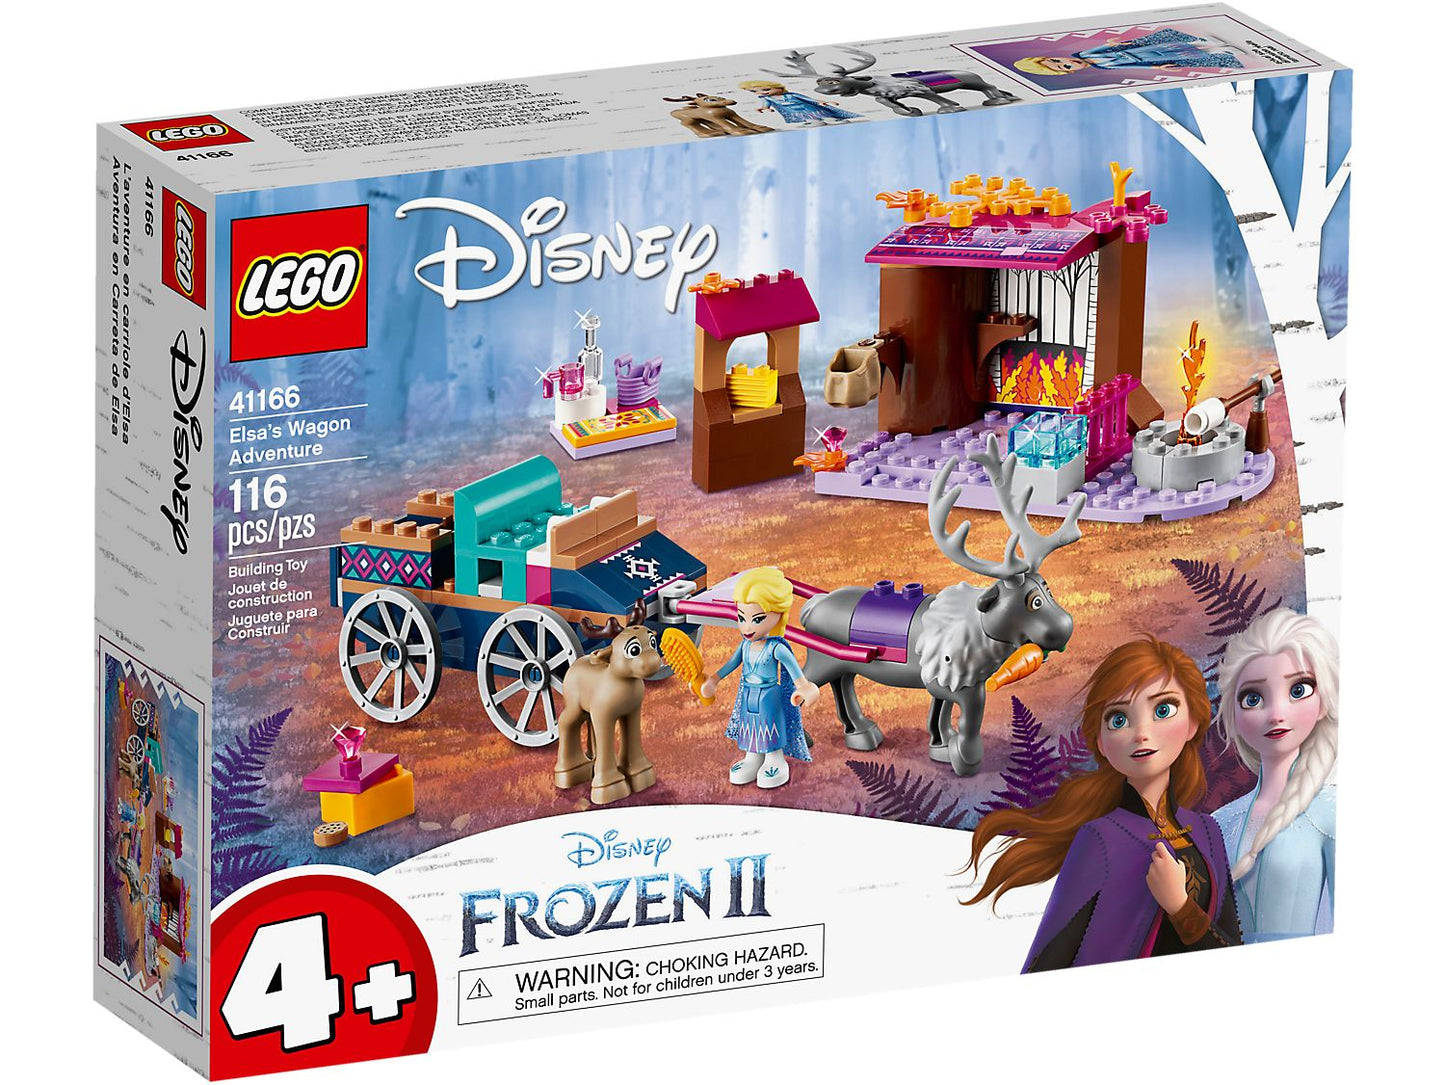 Lego Disney Frozen II Elsa's Wagon Adventure 41166